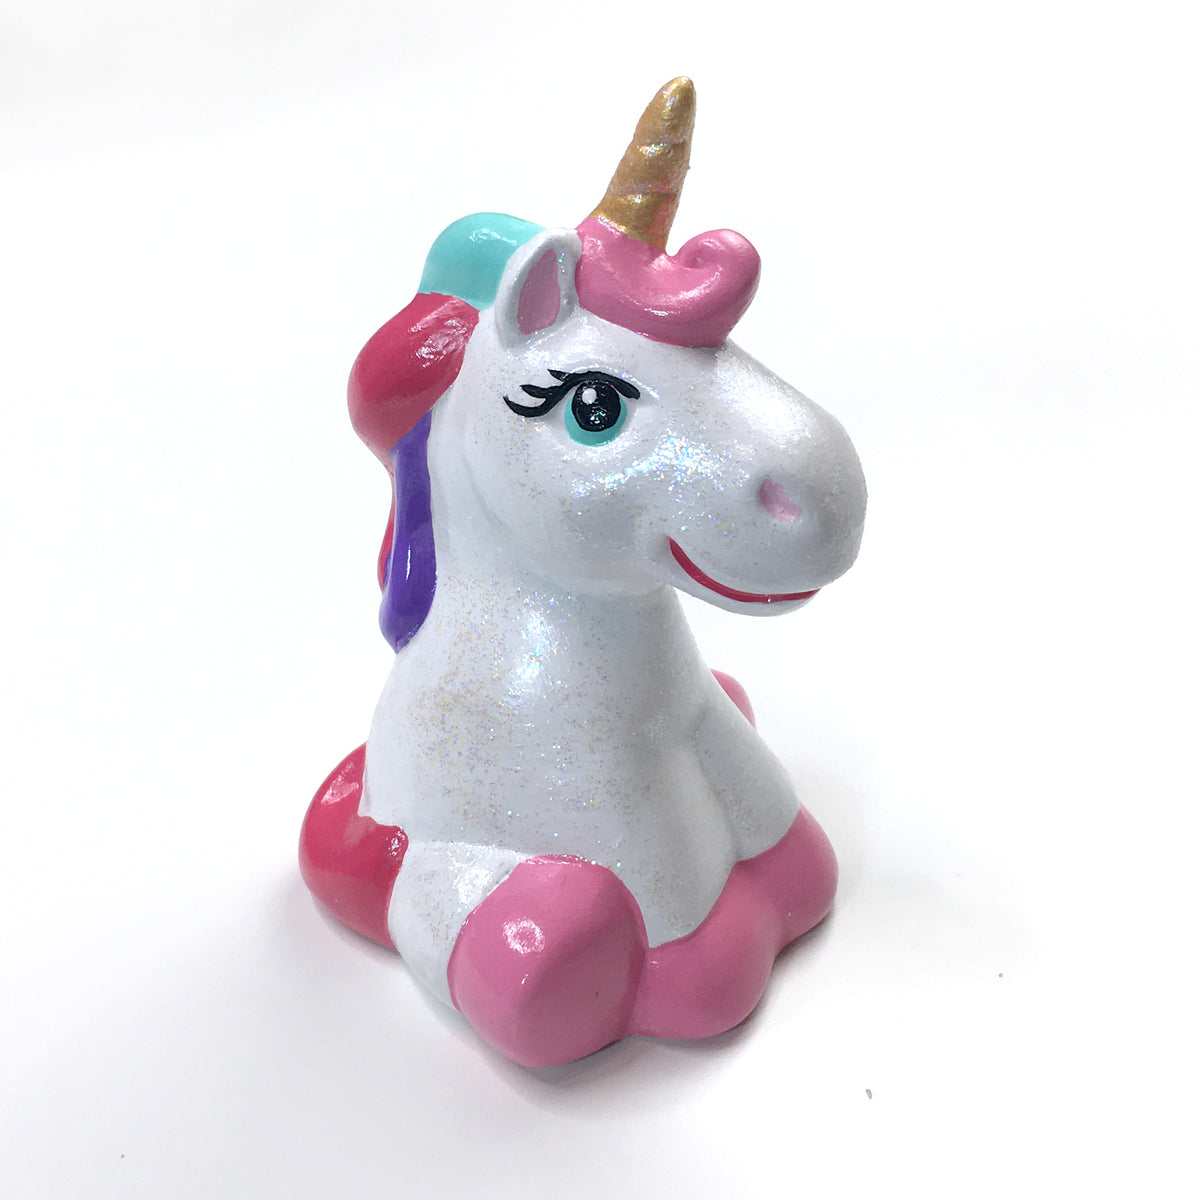 DIY Ceramic Unicorn